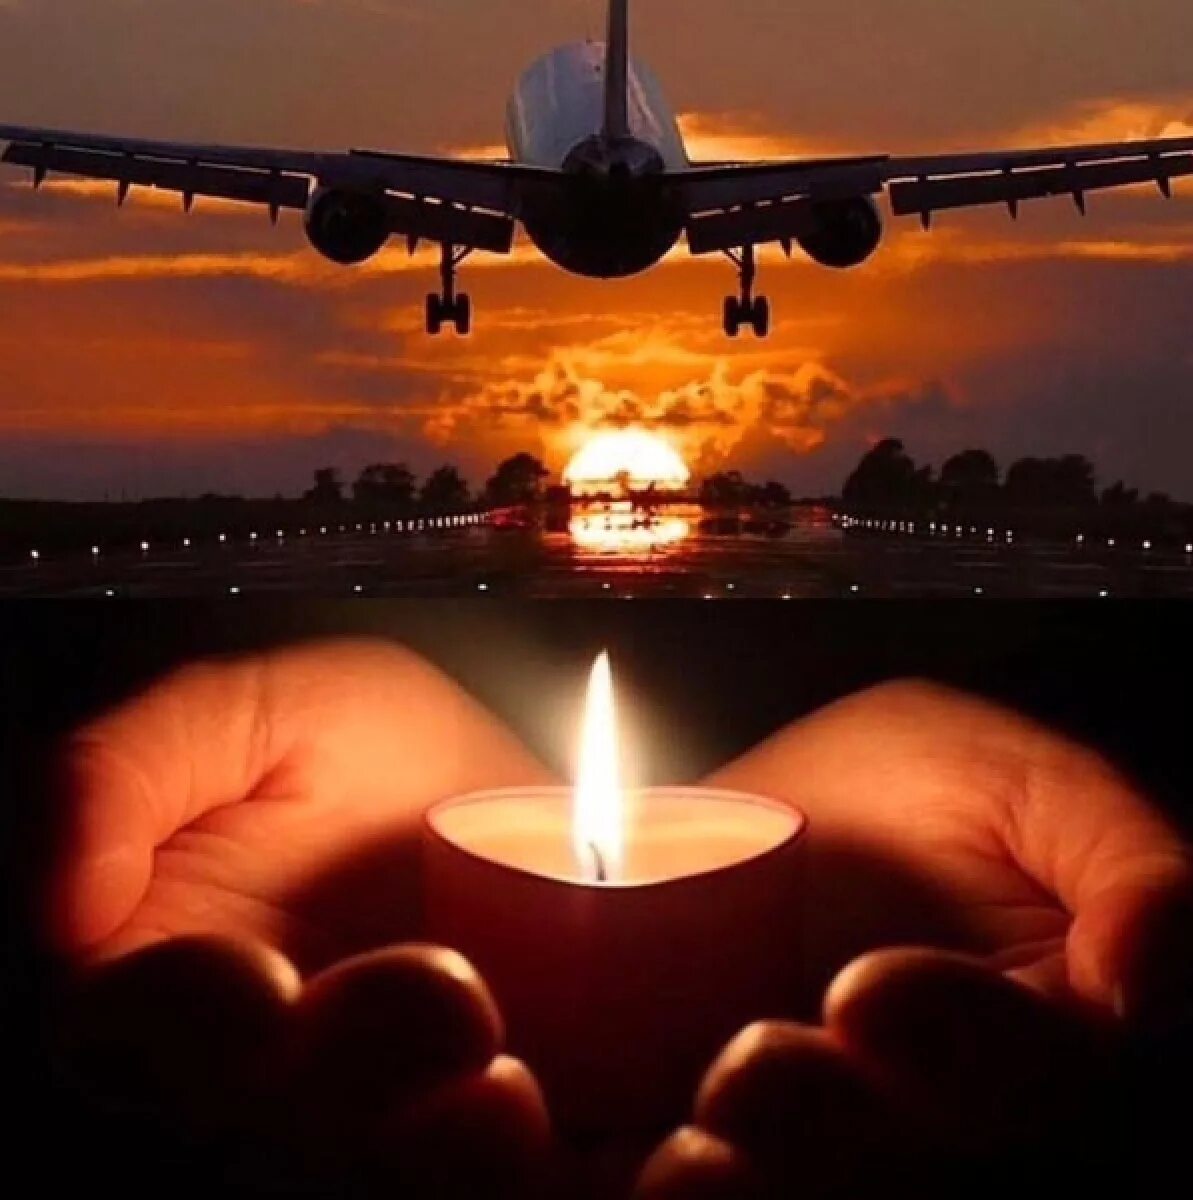 Скорбим. Светлая память погибшим в авиакатастрофе. Светлая память летчикам. Свеча самолет.